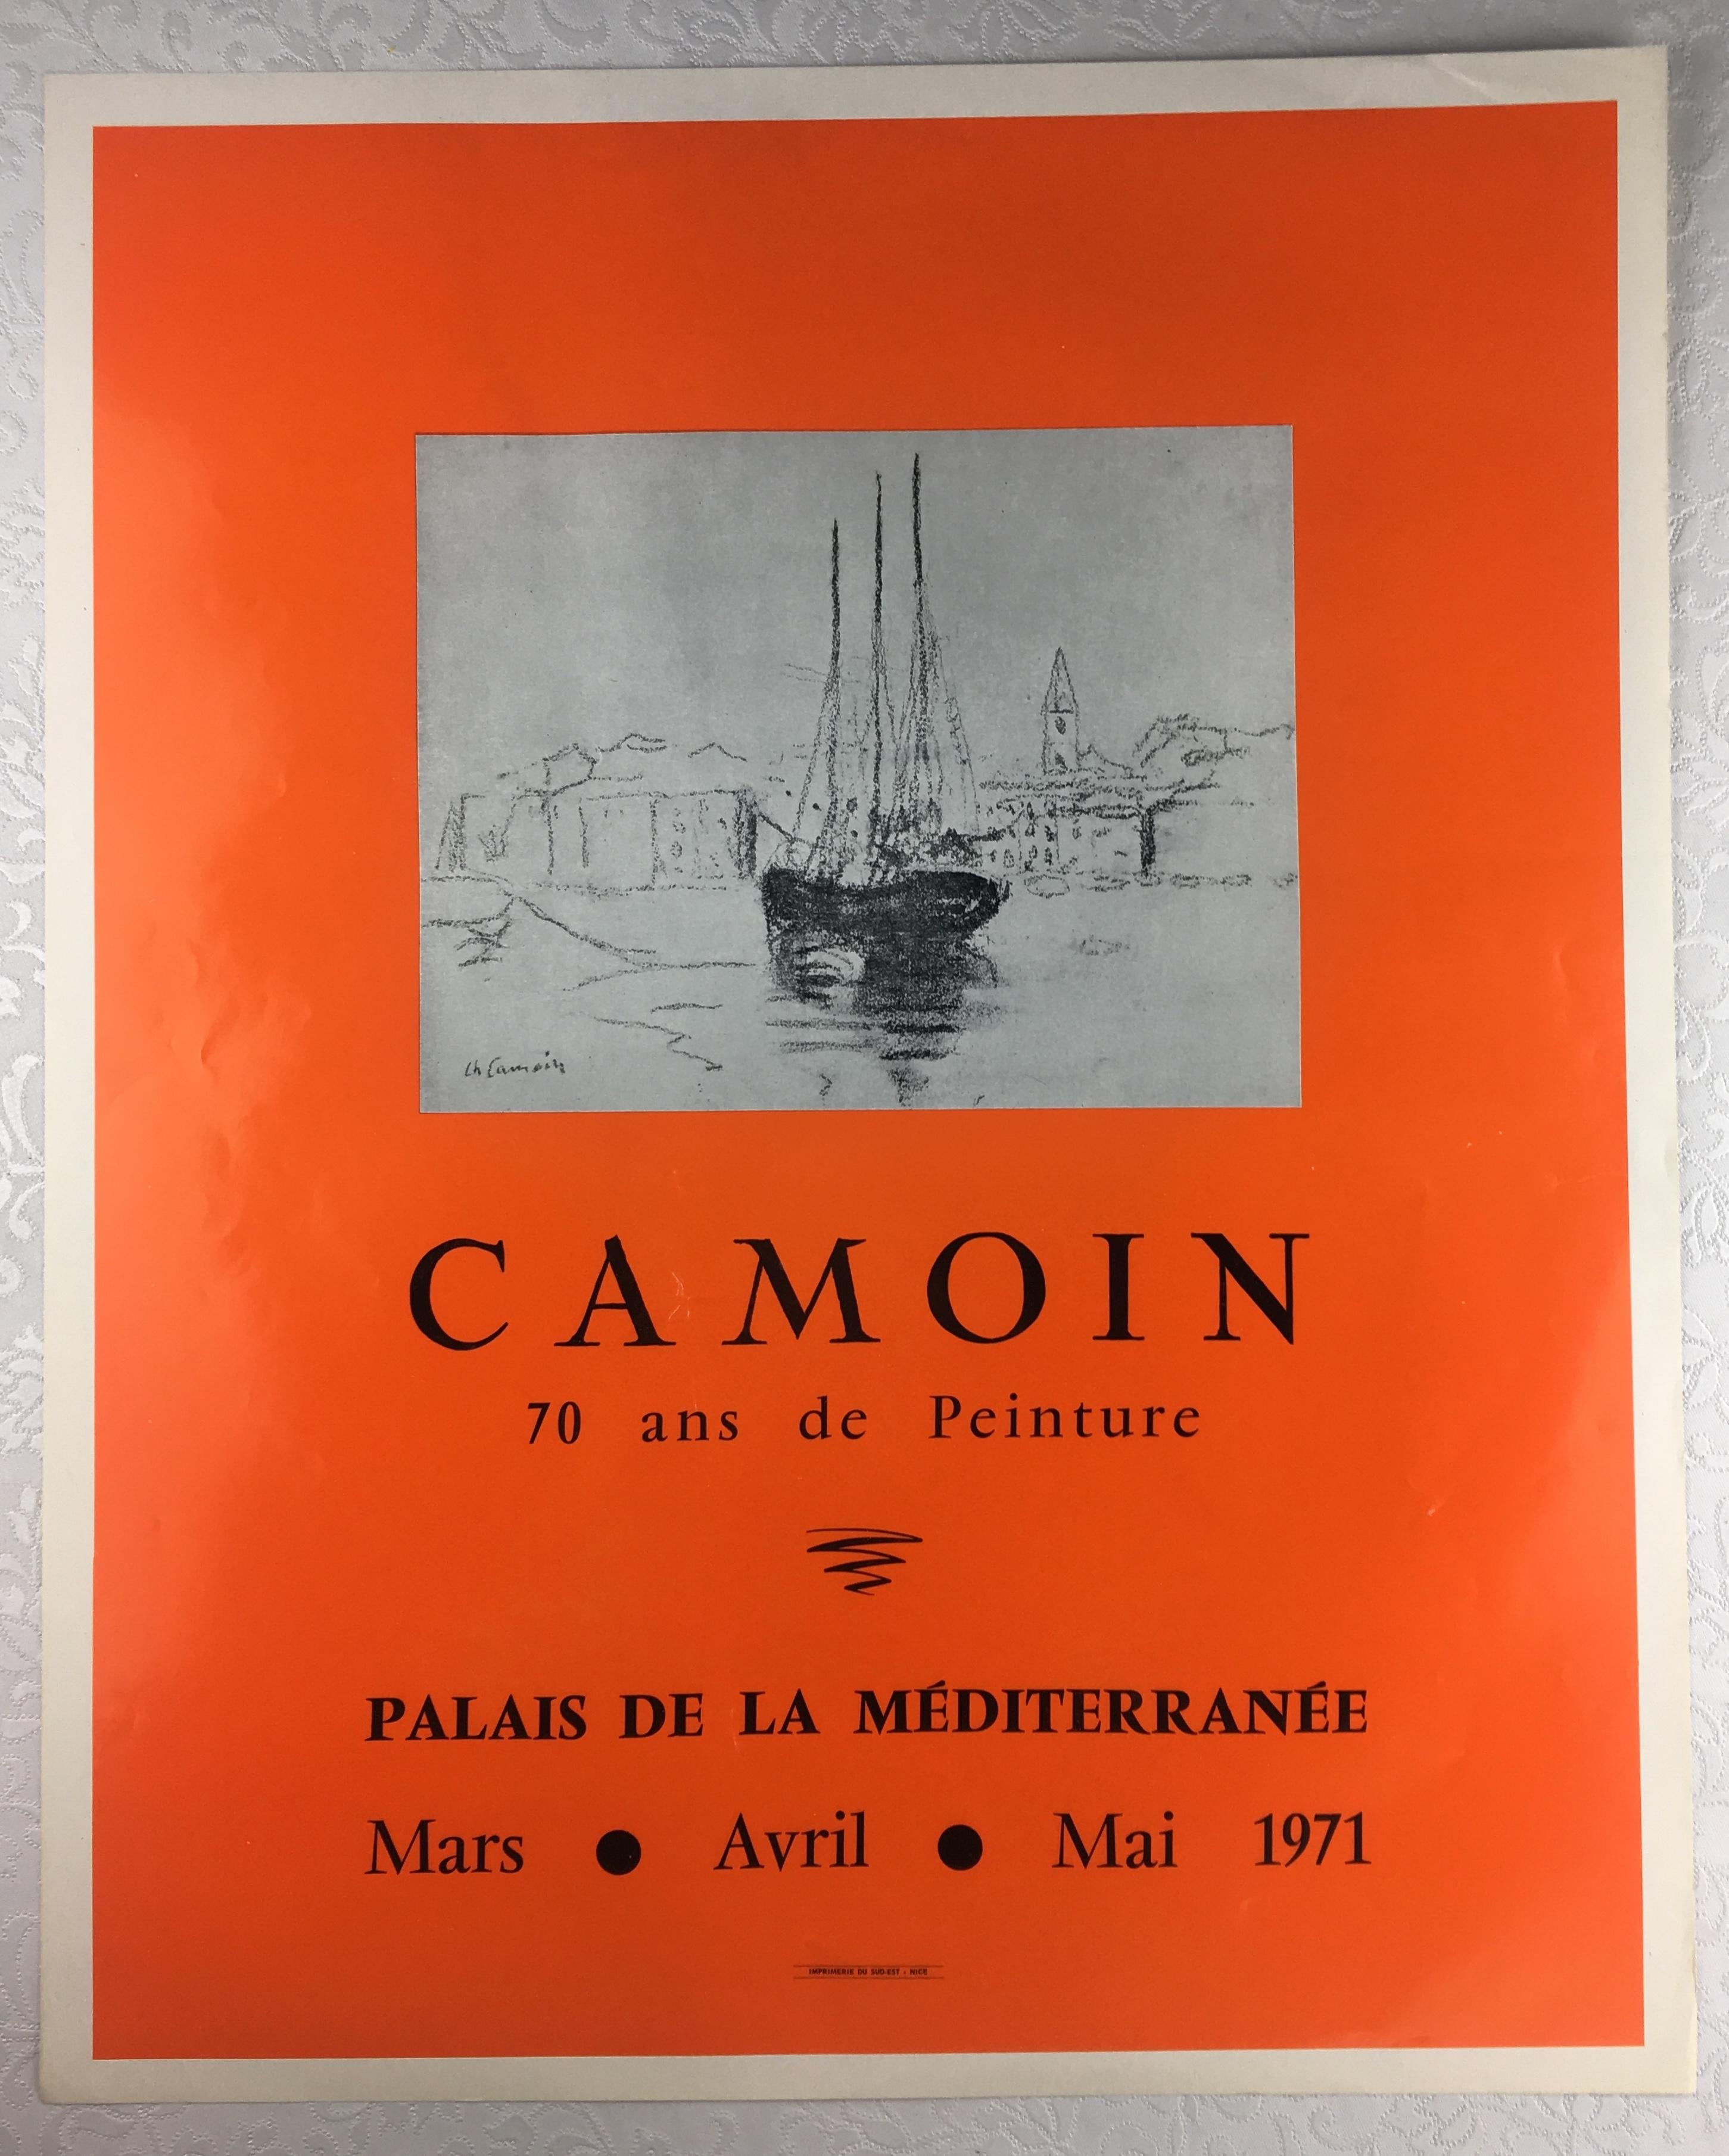 Original Vintage-Plakat von einer Ausstellung des französischen Malers Charles Camoin, lebhafte orange Farbe mit beigen Highlights.

Charles Camoin (französisch: 23. September 1879-20. Mai 1965) war ein französischer Landschaftsmaler des